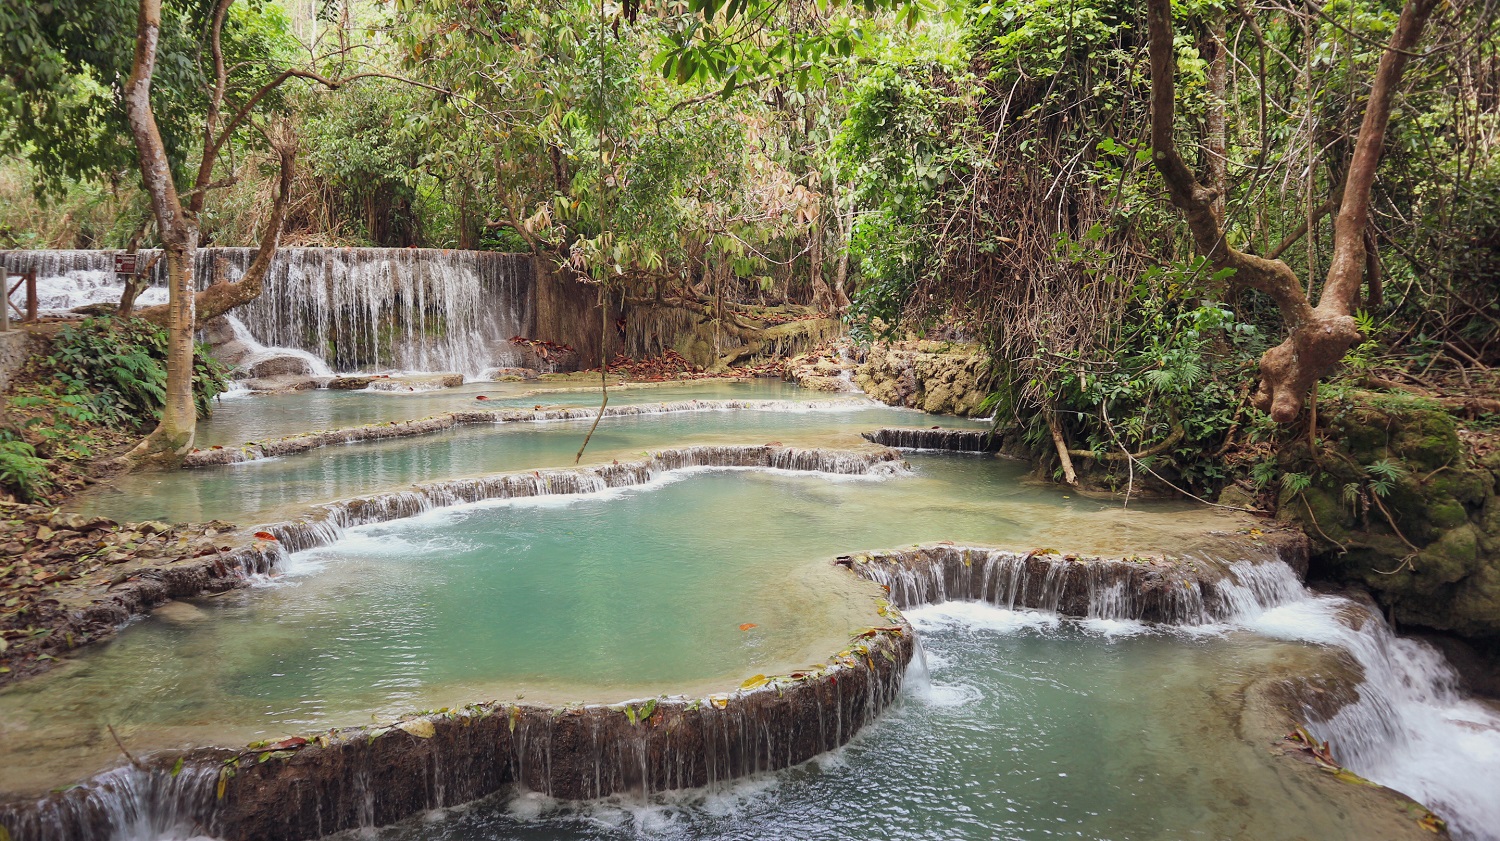 Kuang Si Falls, a day trip from Luang Prabang